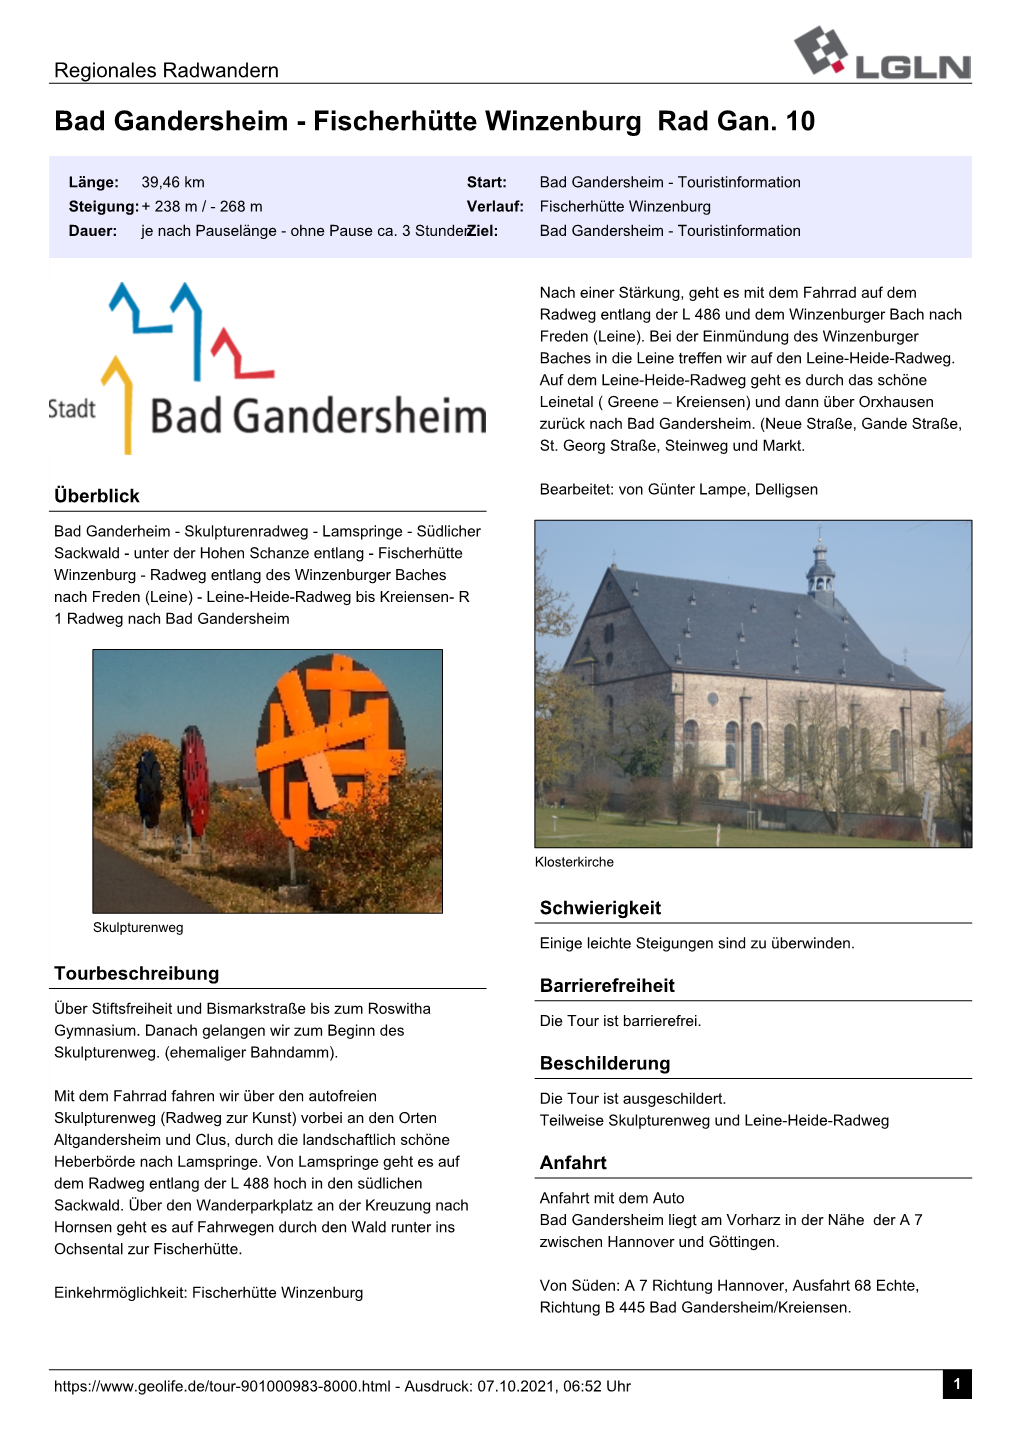 Bad Gandersheim - Fischerhütte Winzenburg Rad Gan